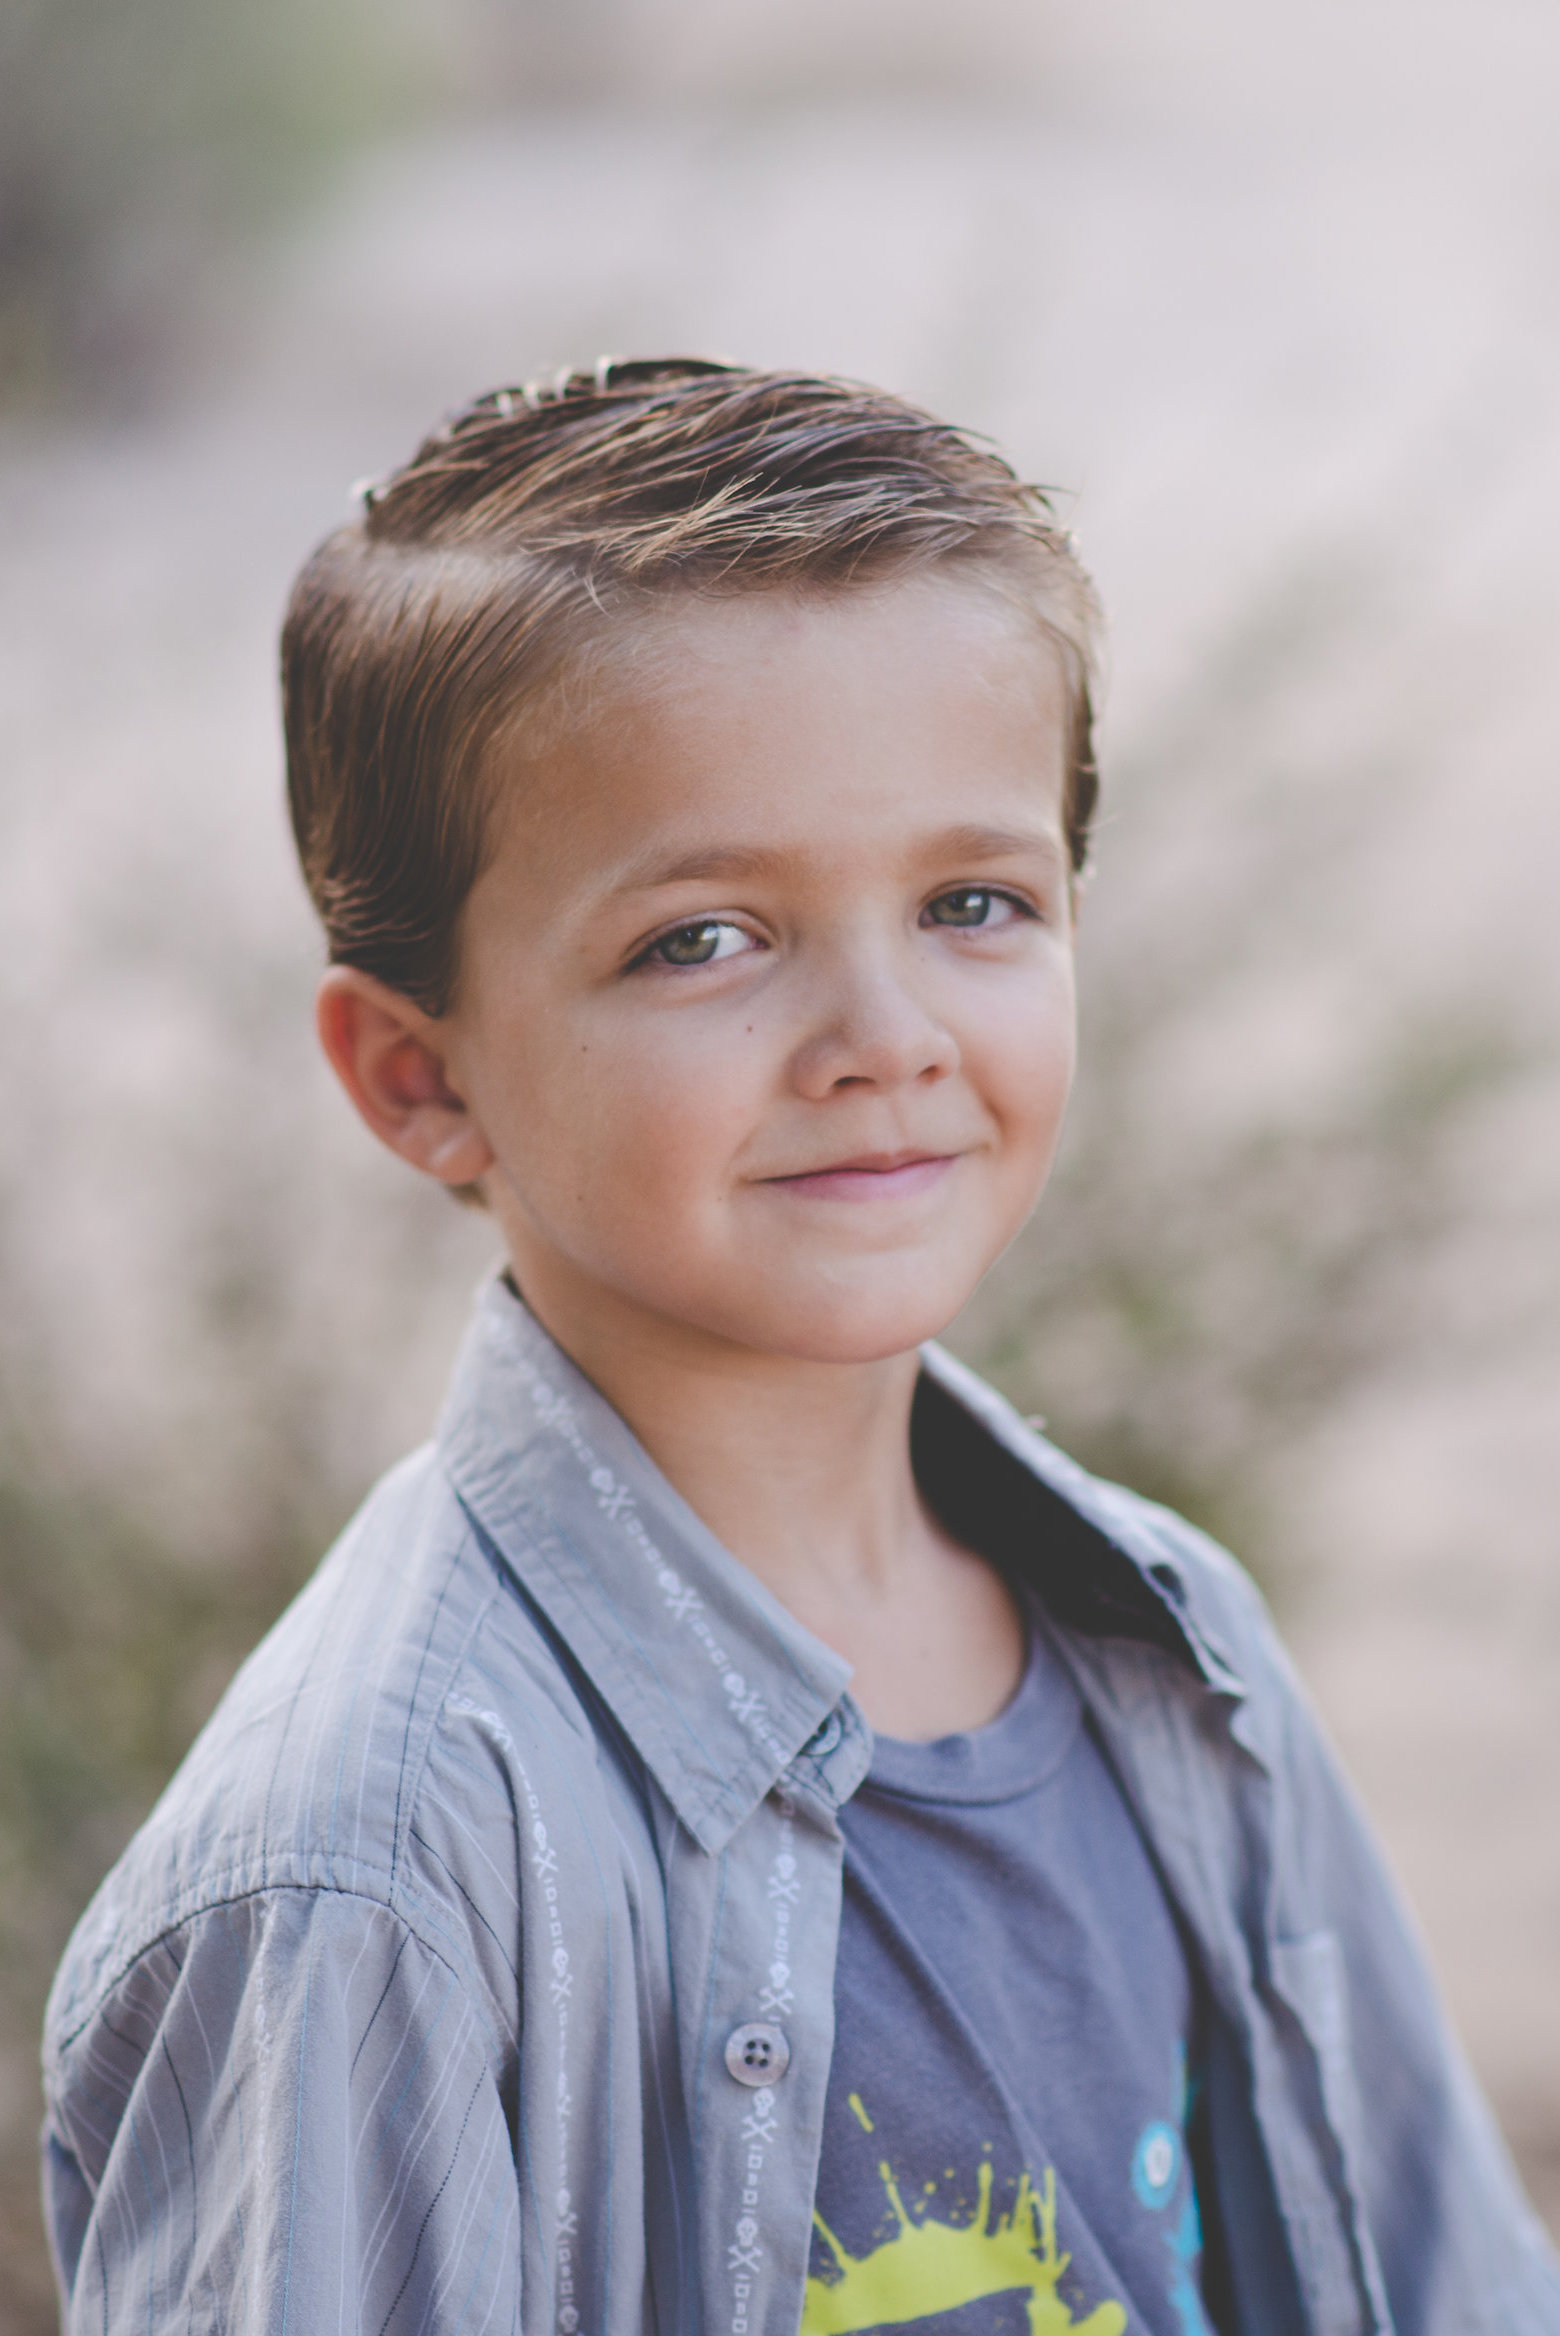 Elliot - September 2015 (6 years old)